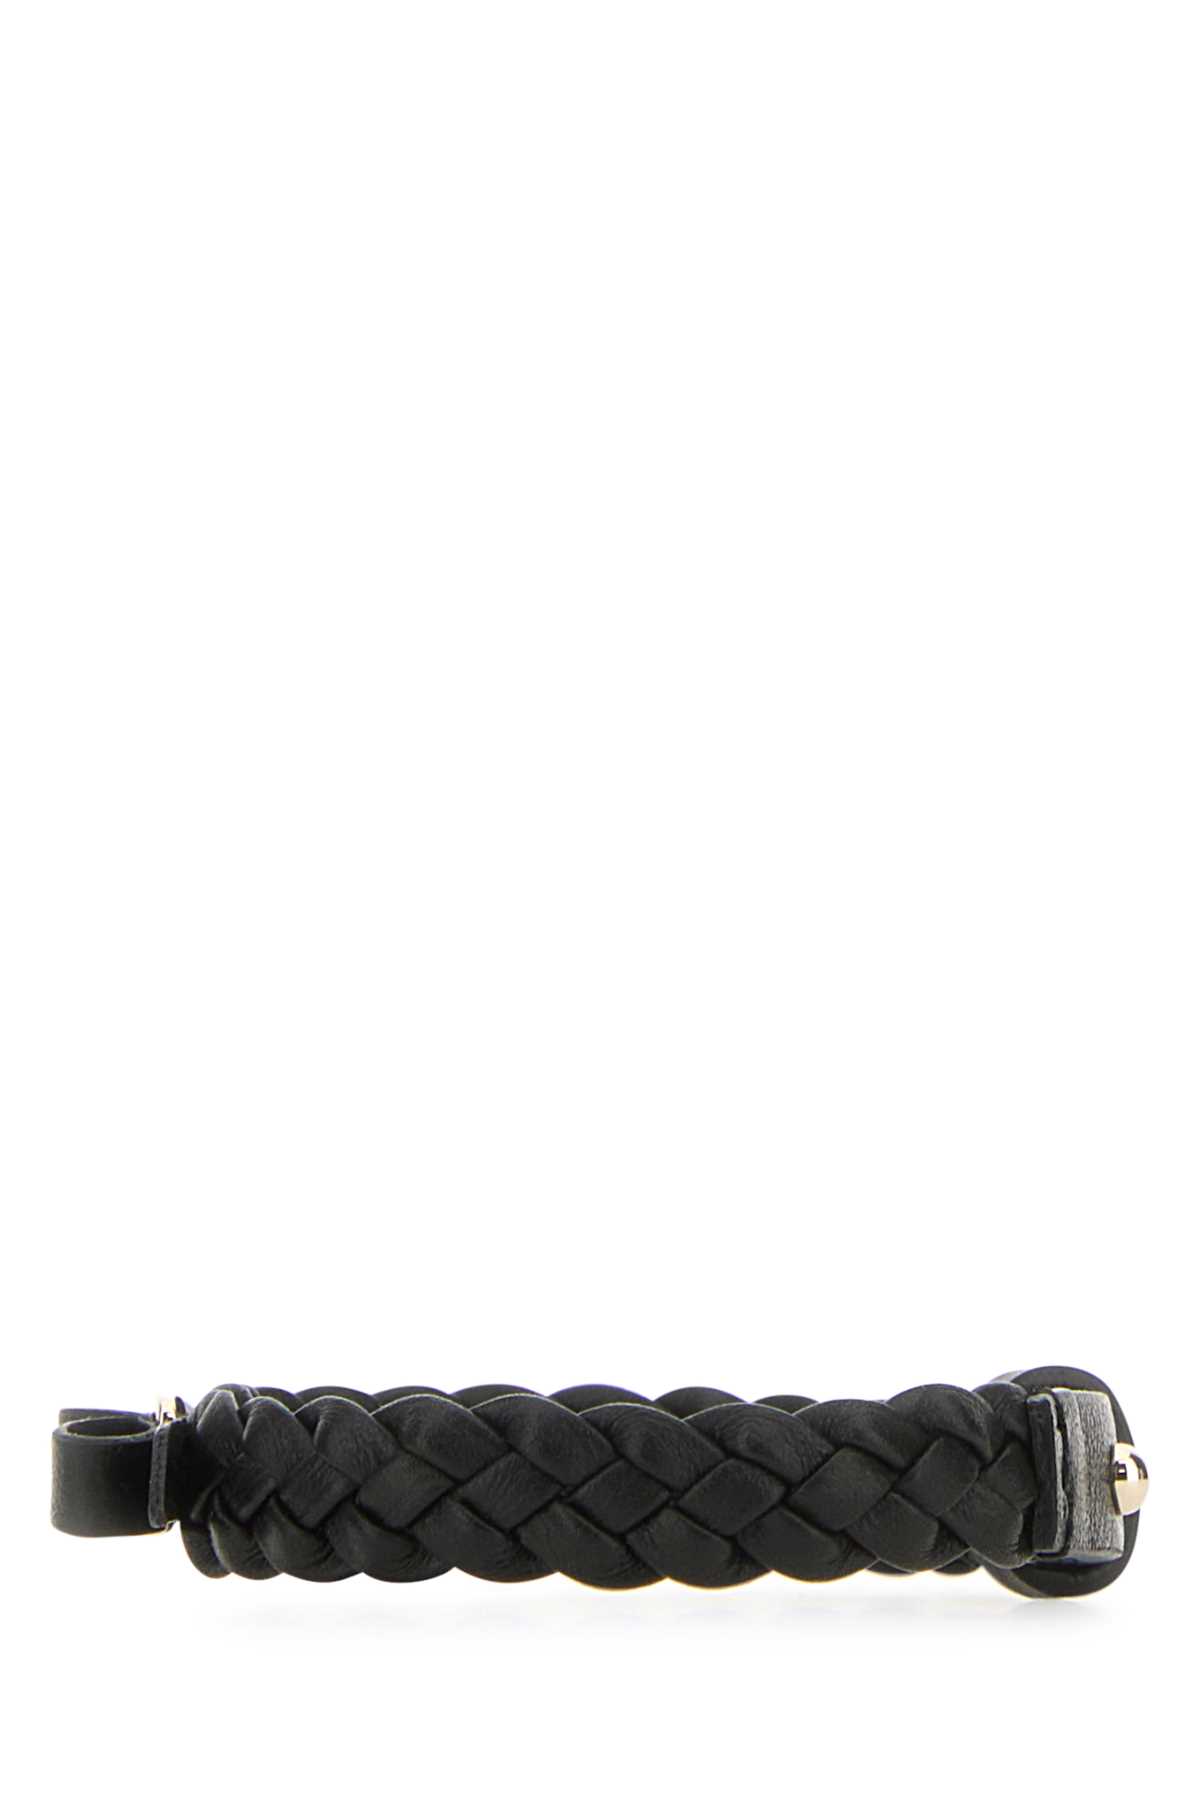 Ferragamo Black Leather Vara Bracelet In Nerooro